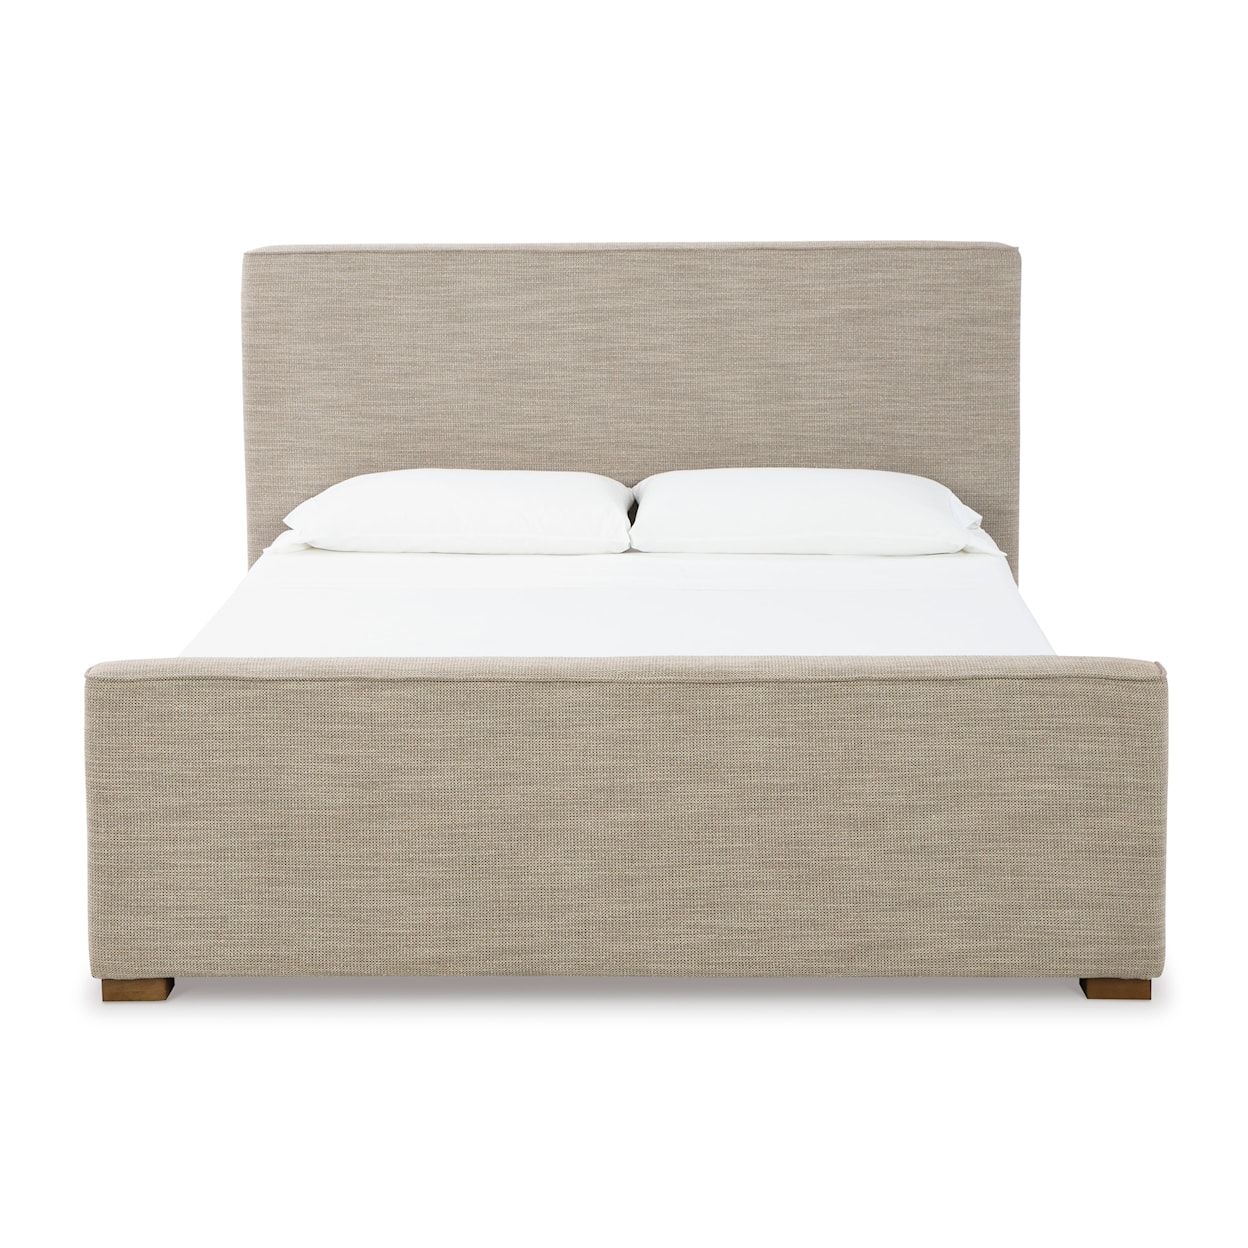 StyleLine Dakmore California King Upholstered Bed